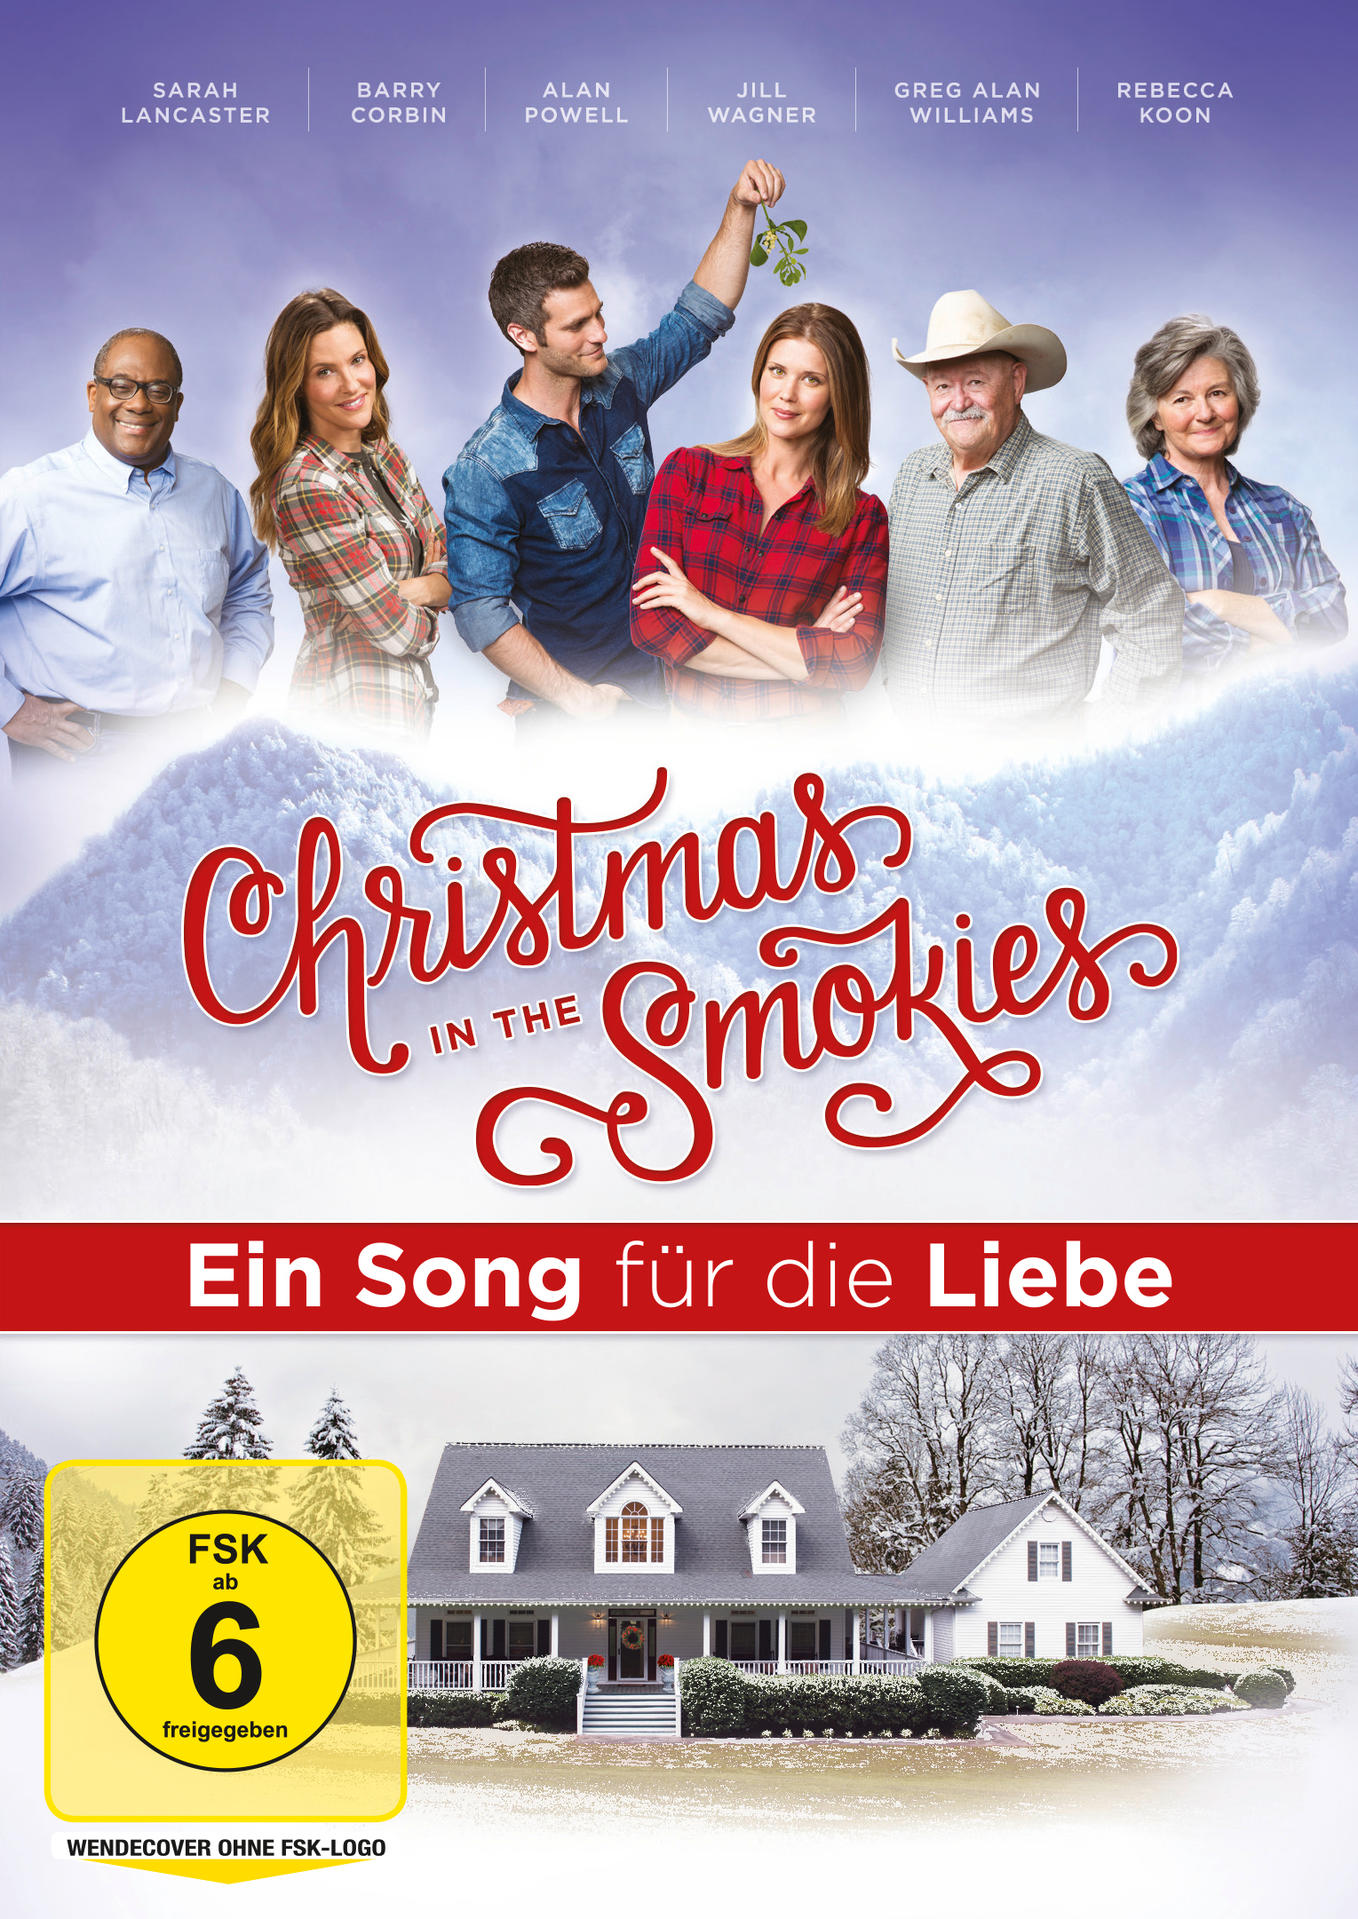 Christmas In The Smokies - DVD Ein Song die Liebe für